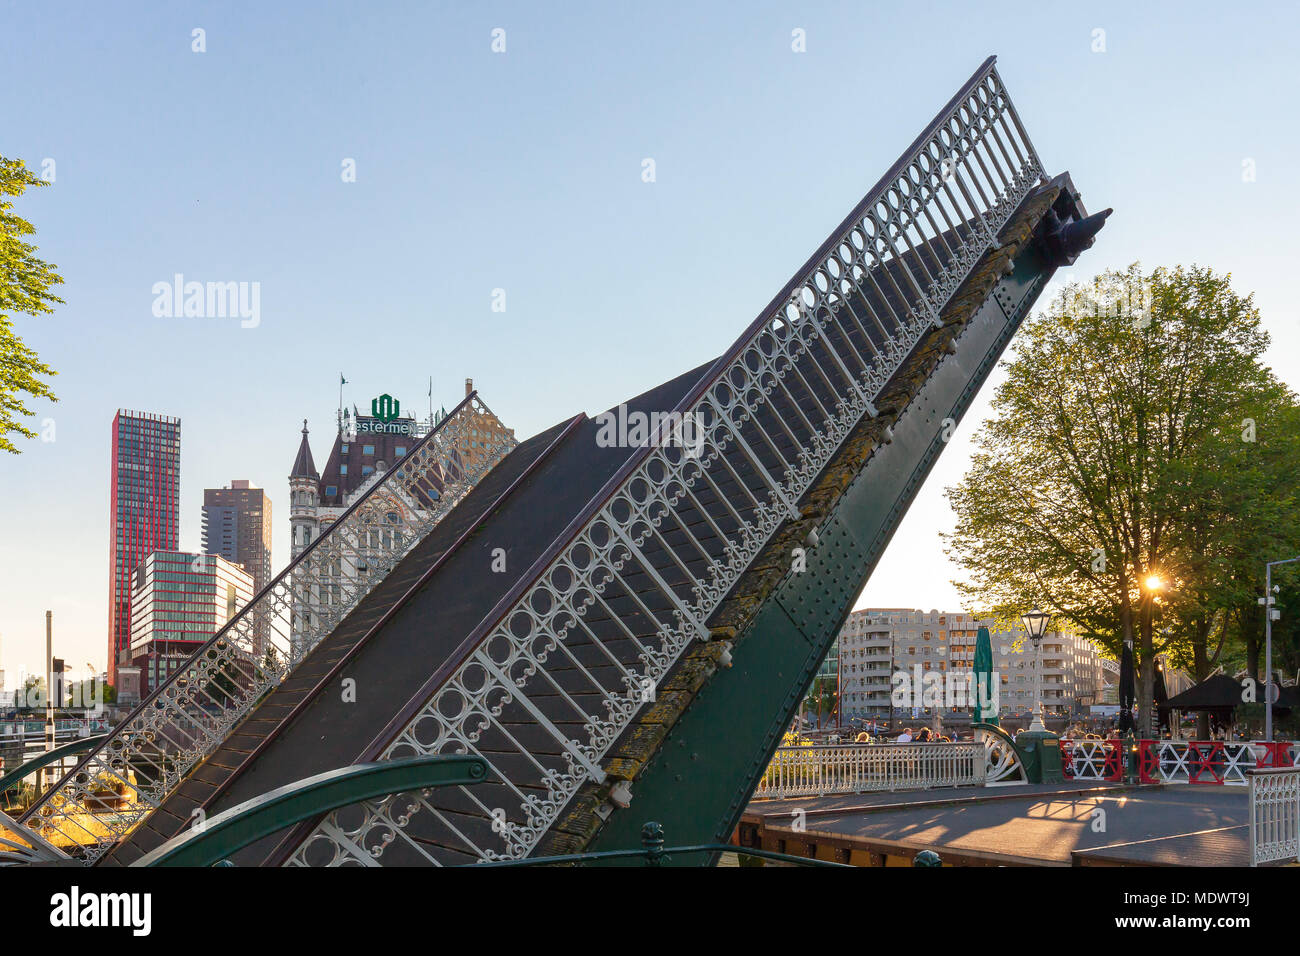 Geöffnet Spanjaards Brücke im historischen Bereich von Rotterdam Stockfoto